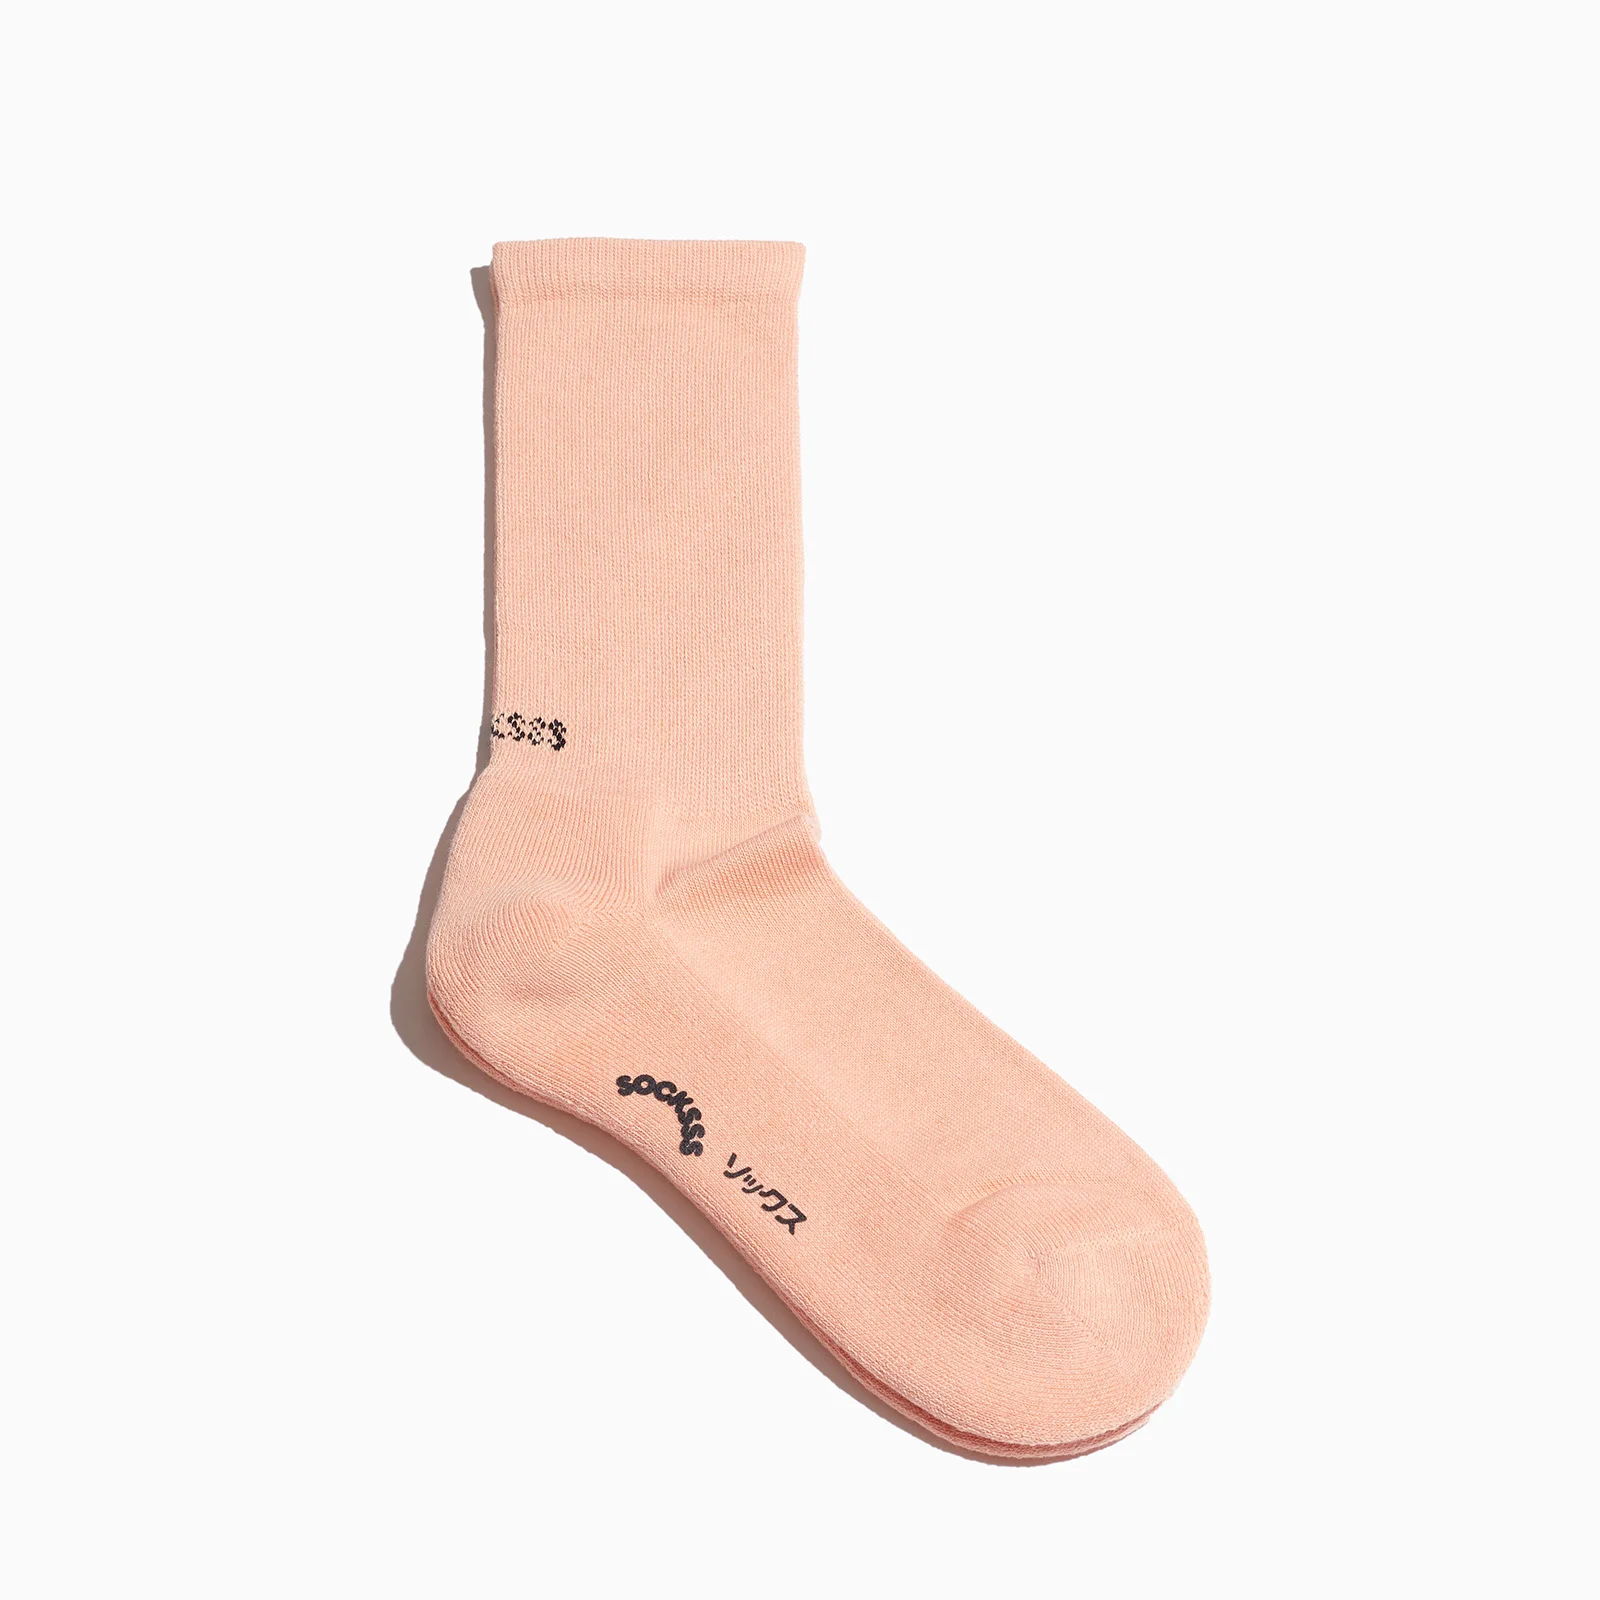 SOCKSSS Men's Tennis Solid Socks - Cherry Peach Image 1